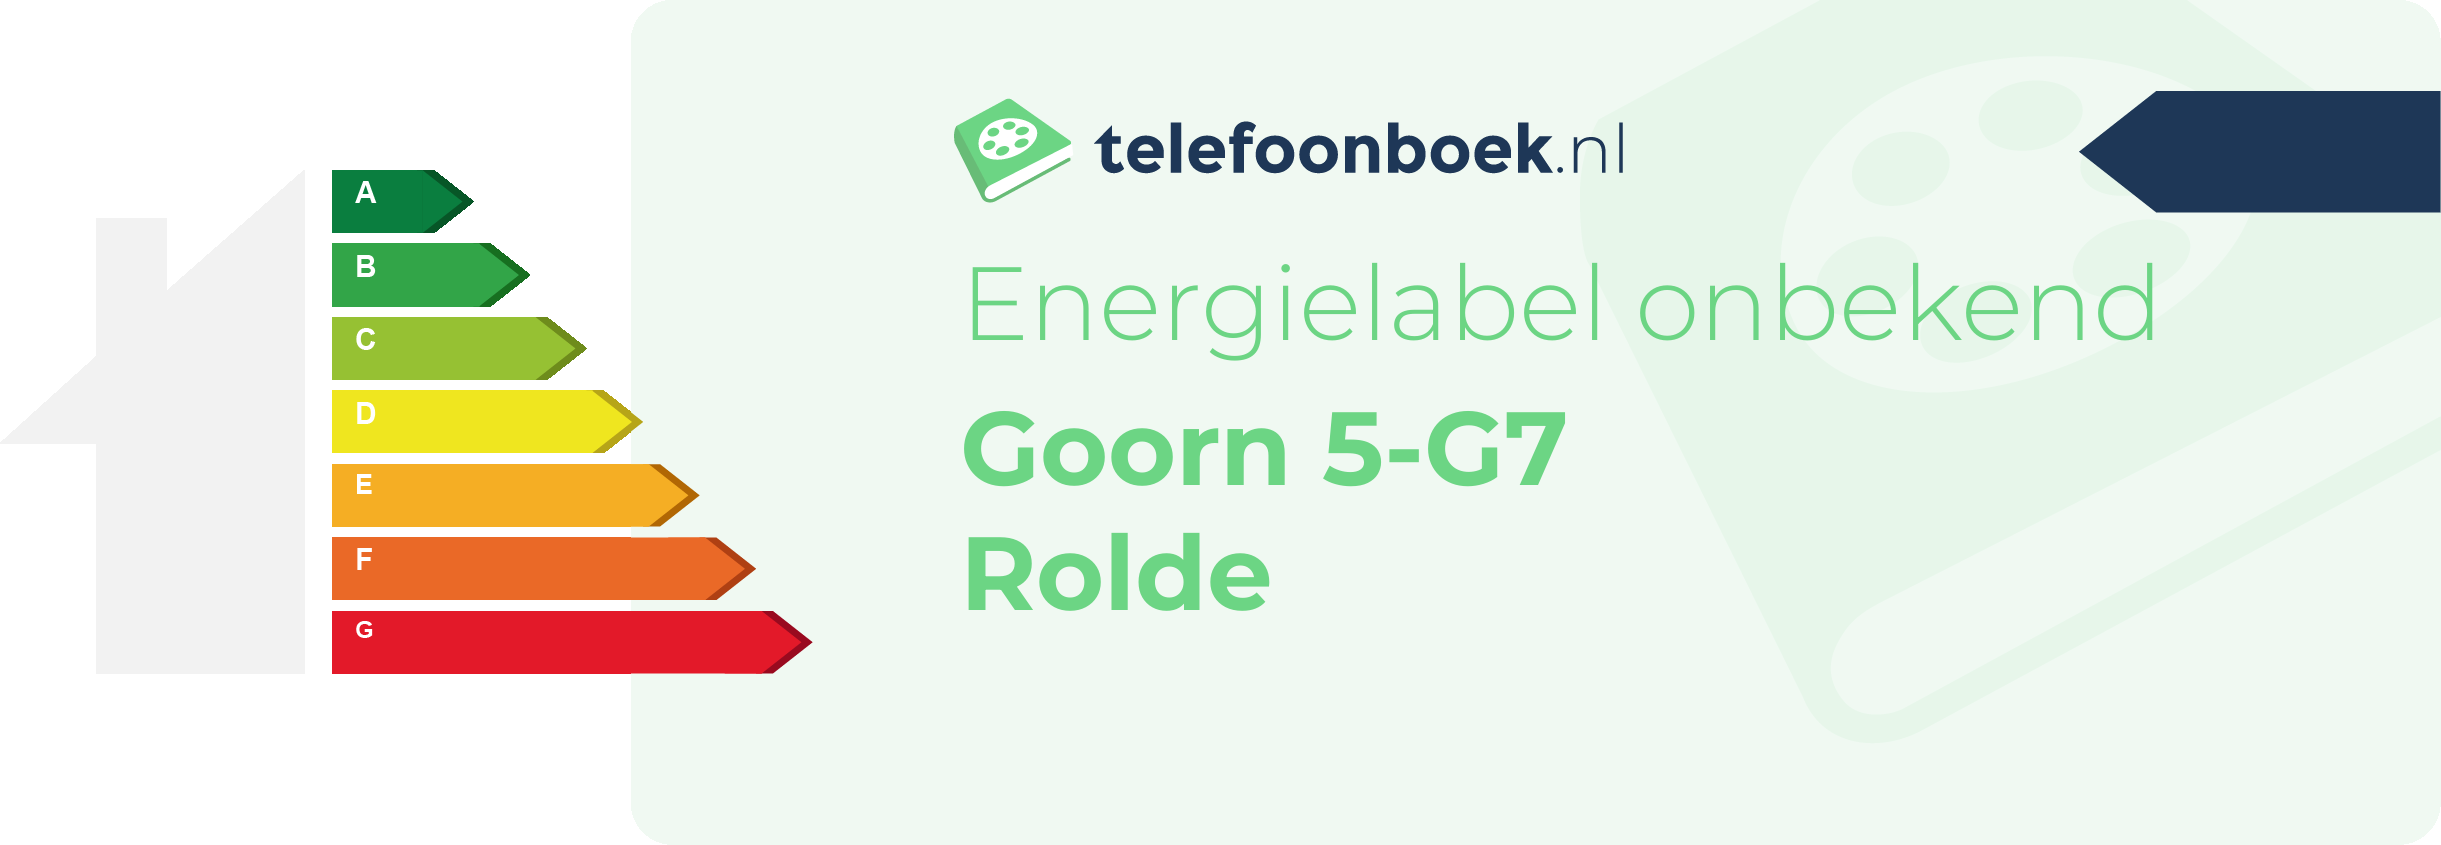 Energielabel Goorn 5-G7 Rolde